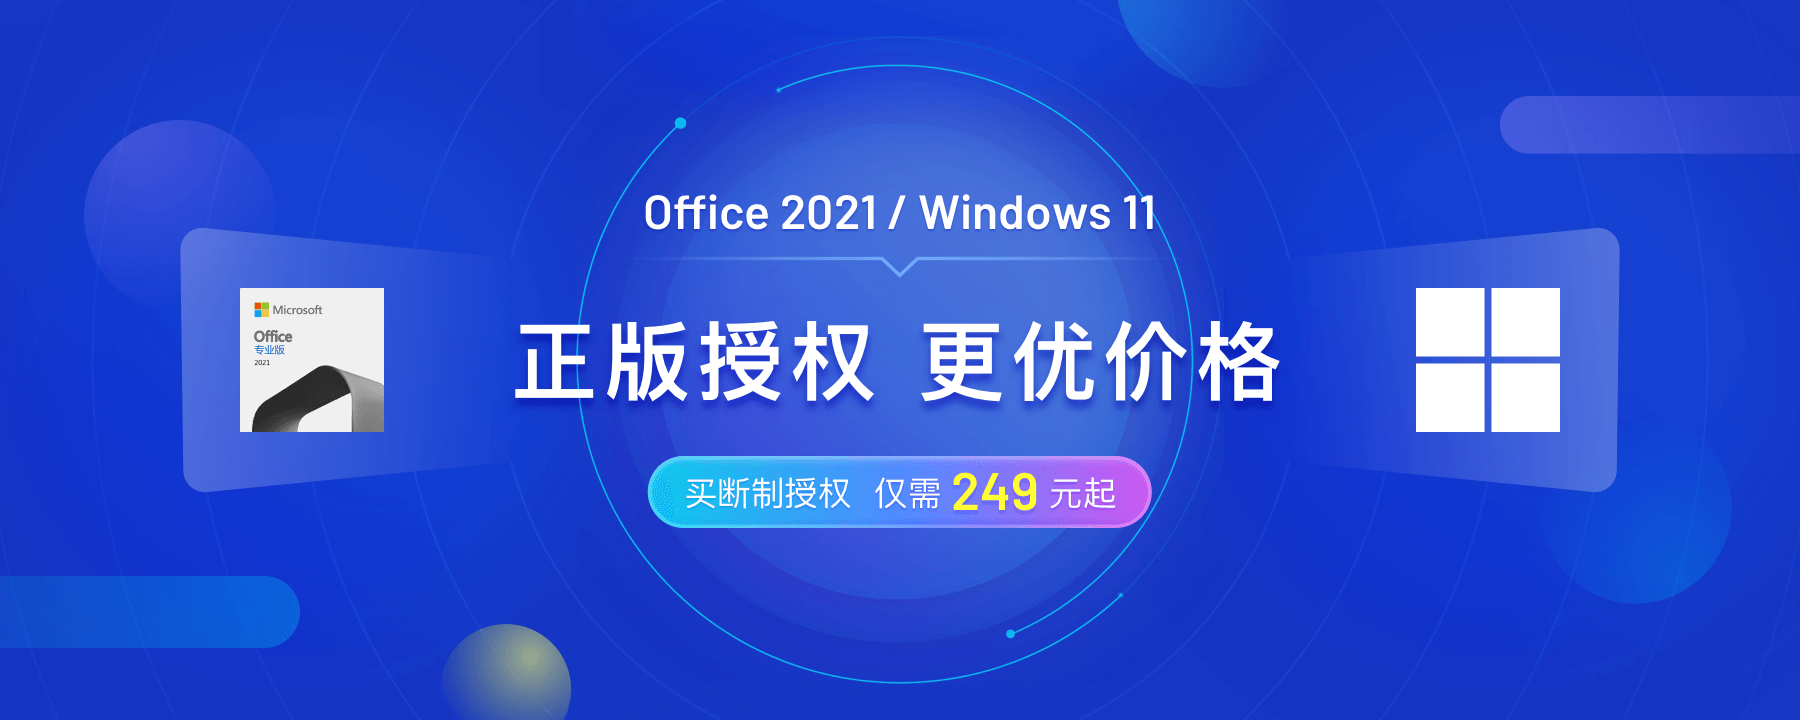 远低官网价！正版 Office 2021、Windows 11 上架优惠